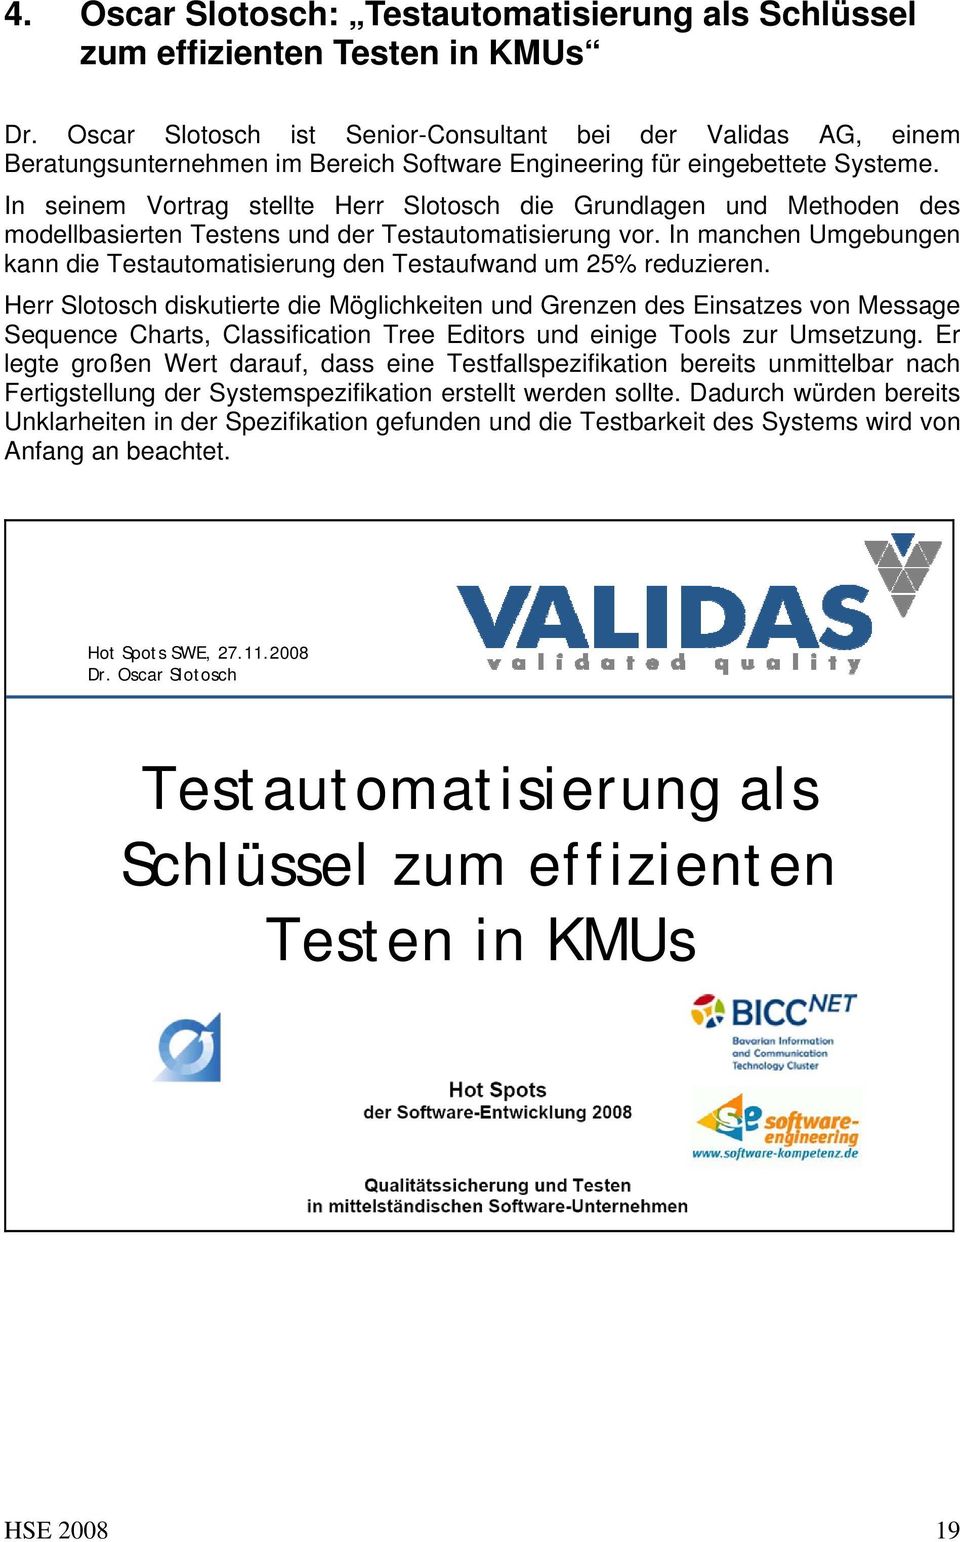 In seinem Vortrag stellte Herr Slotosch die Grundlagen und Methoden des modellbasierten Testens und der Testautomatisierung vor.